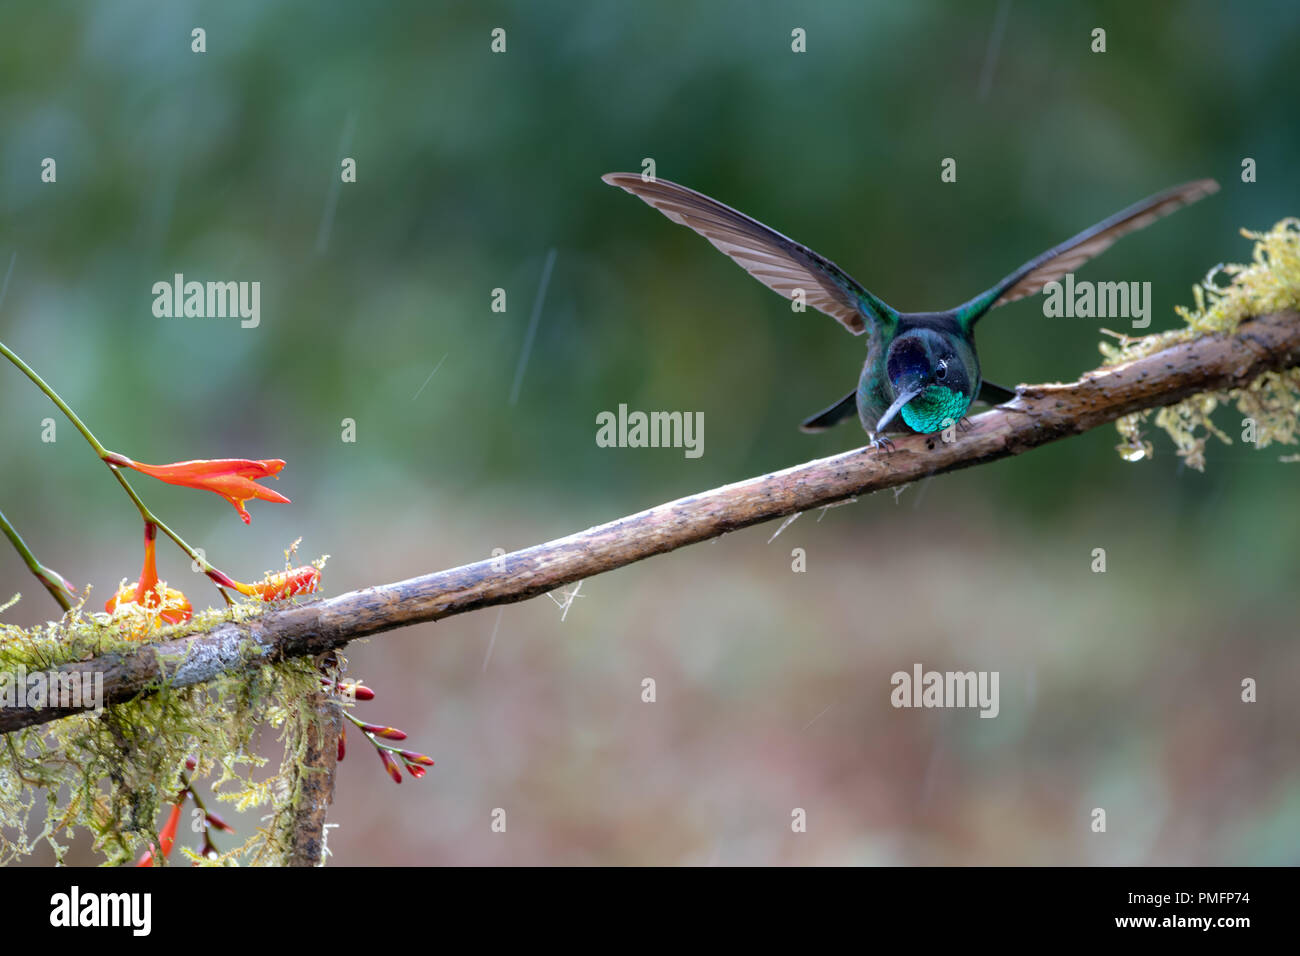 Talamanca hummingbird (Eugenes spectabilis) in Costa Rica Stock Photo